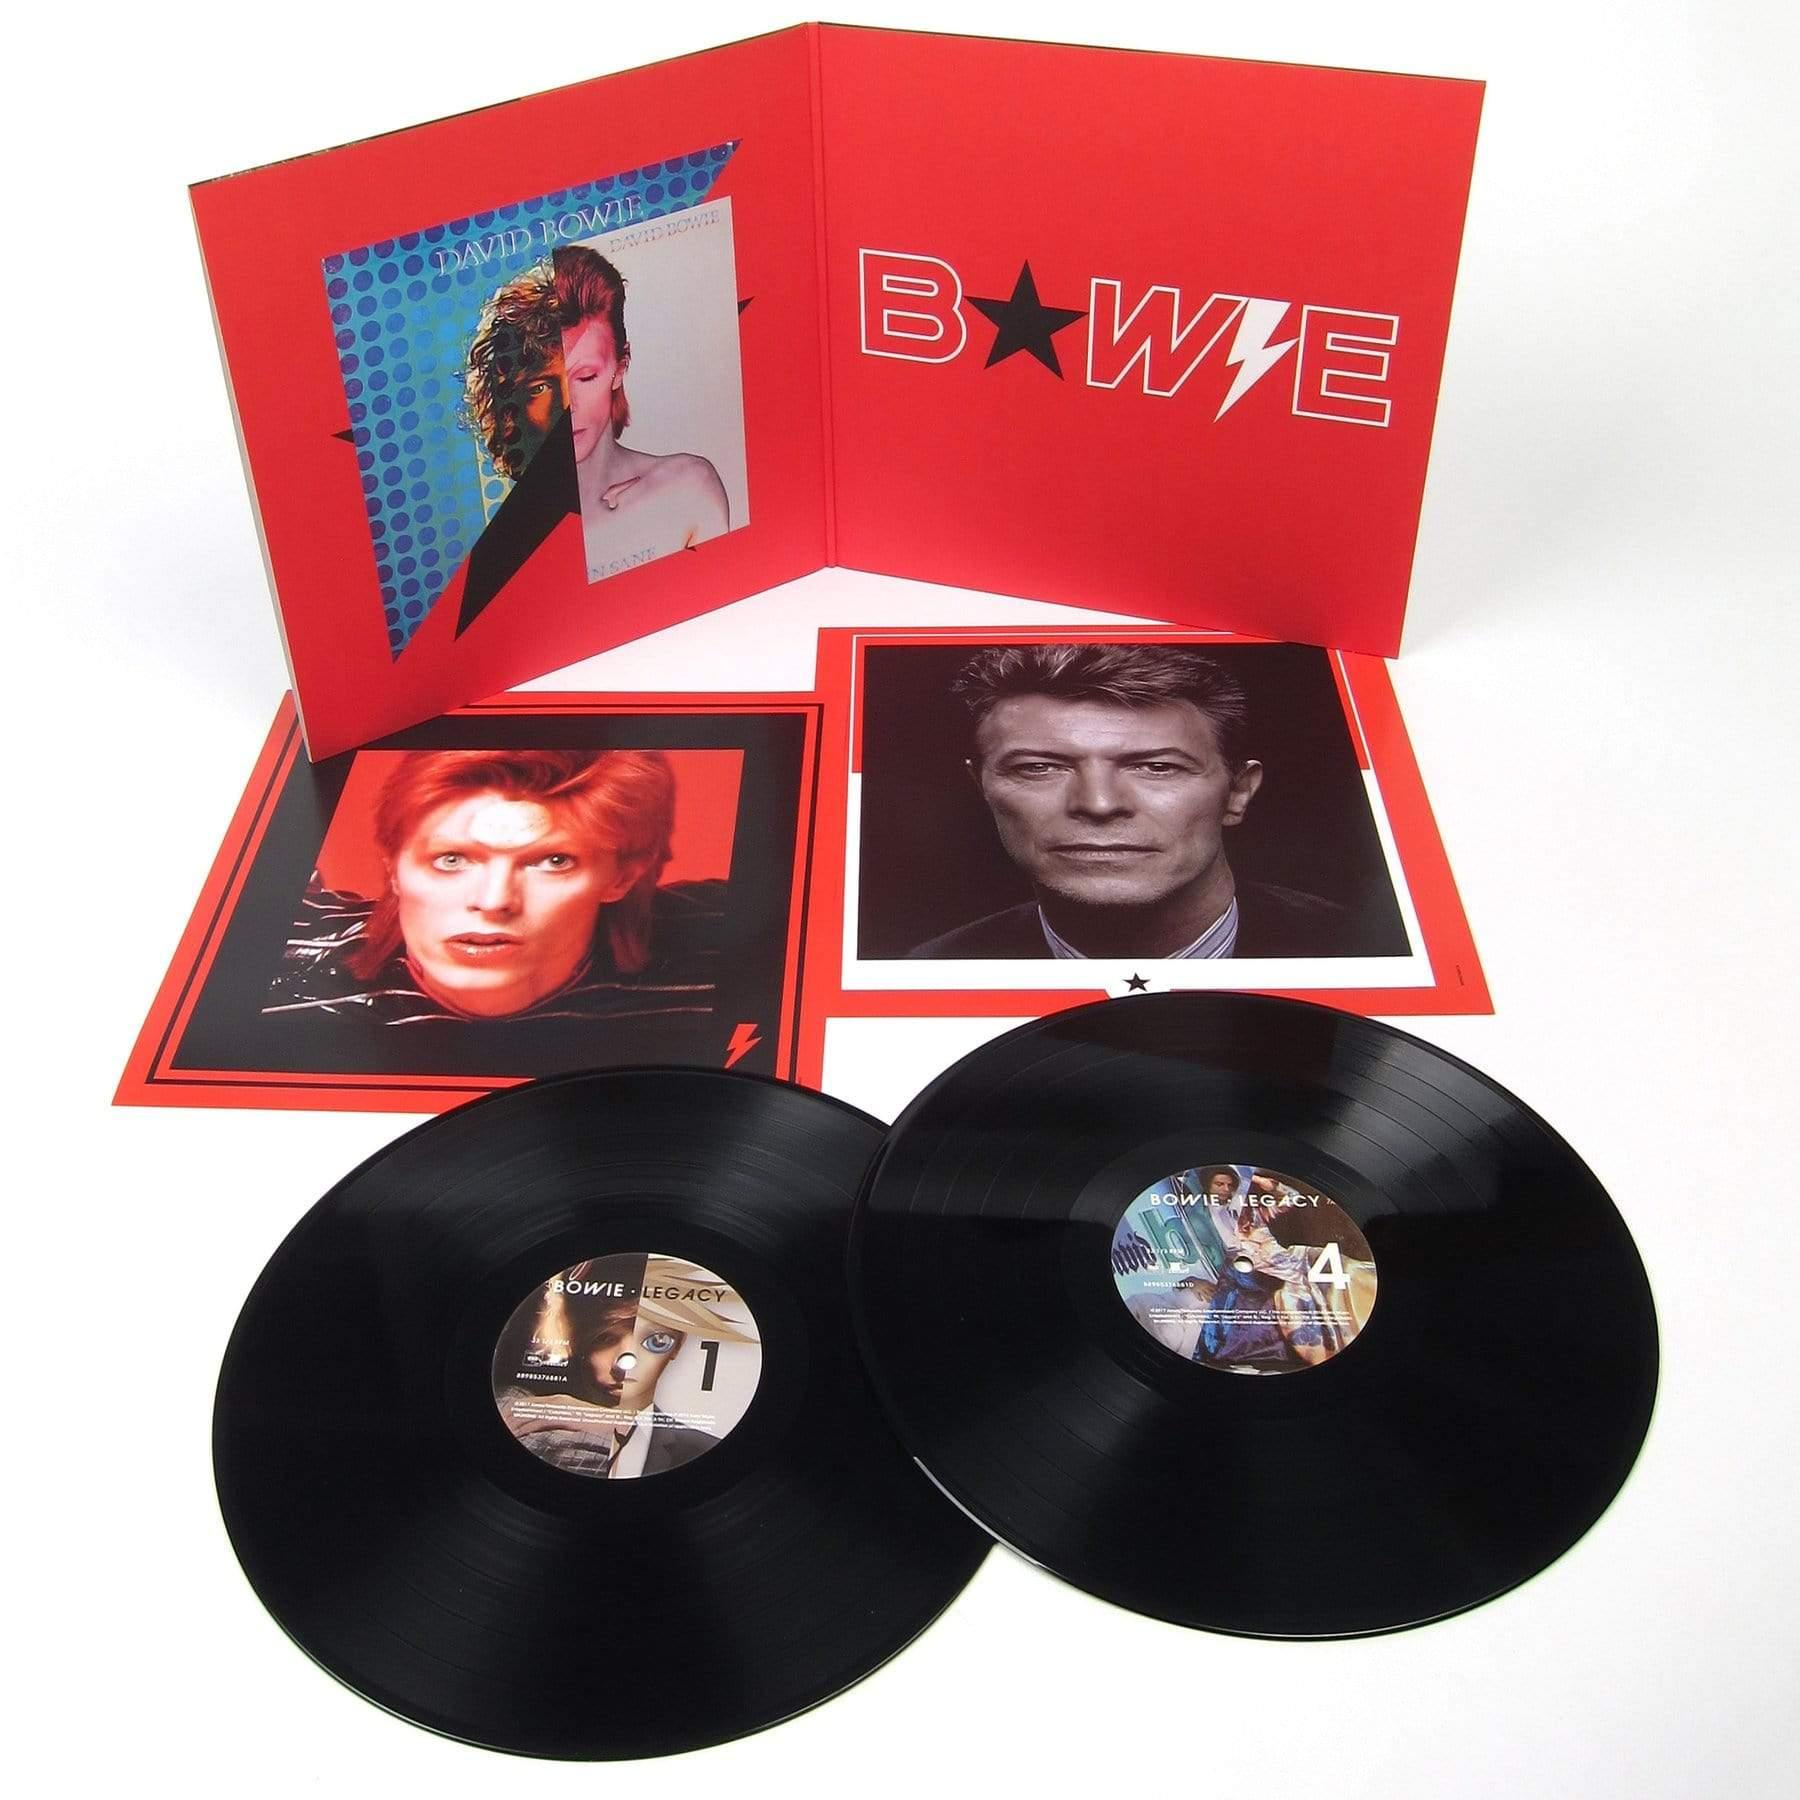 Legacy - David Bowie (LP/Vinyl)